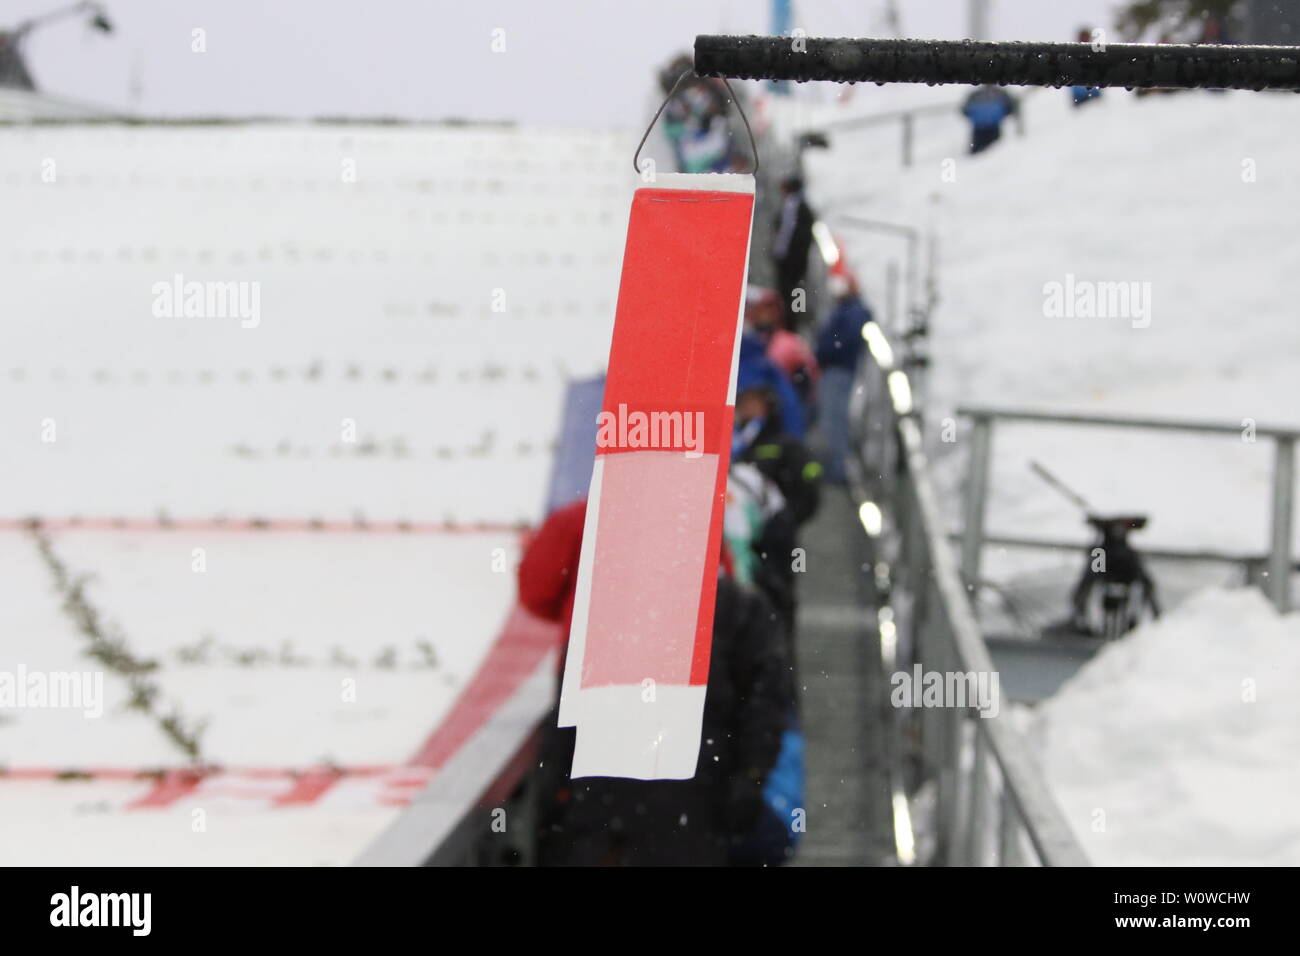 Windfähnchen beim Skispringen Herren NH, FIS Nordische Ski-WM 2019 in Seefeld Stock Photo